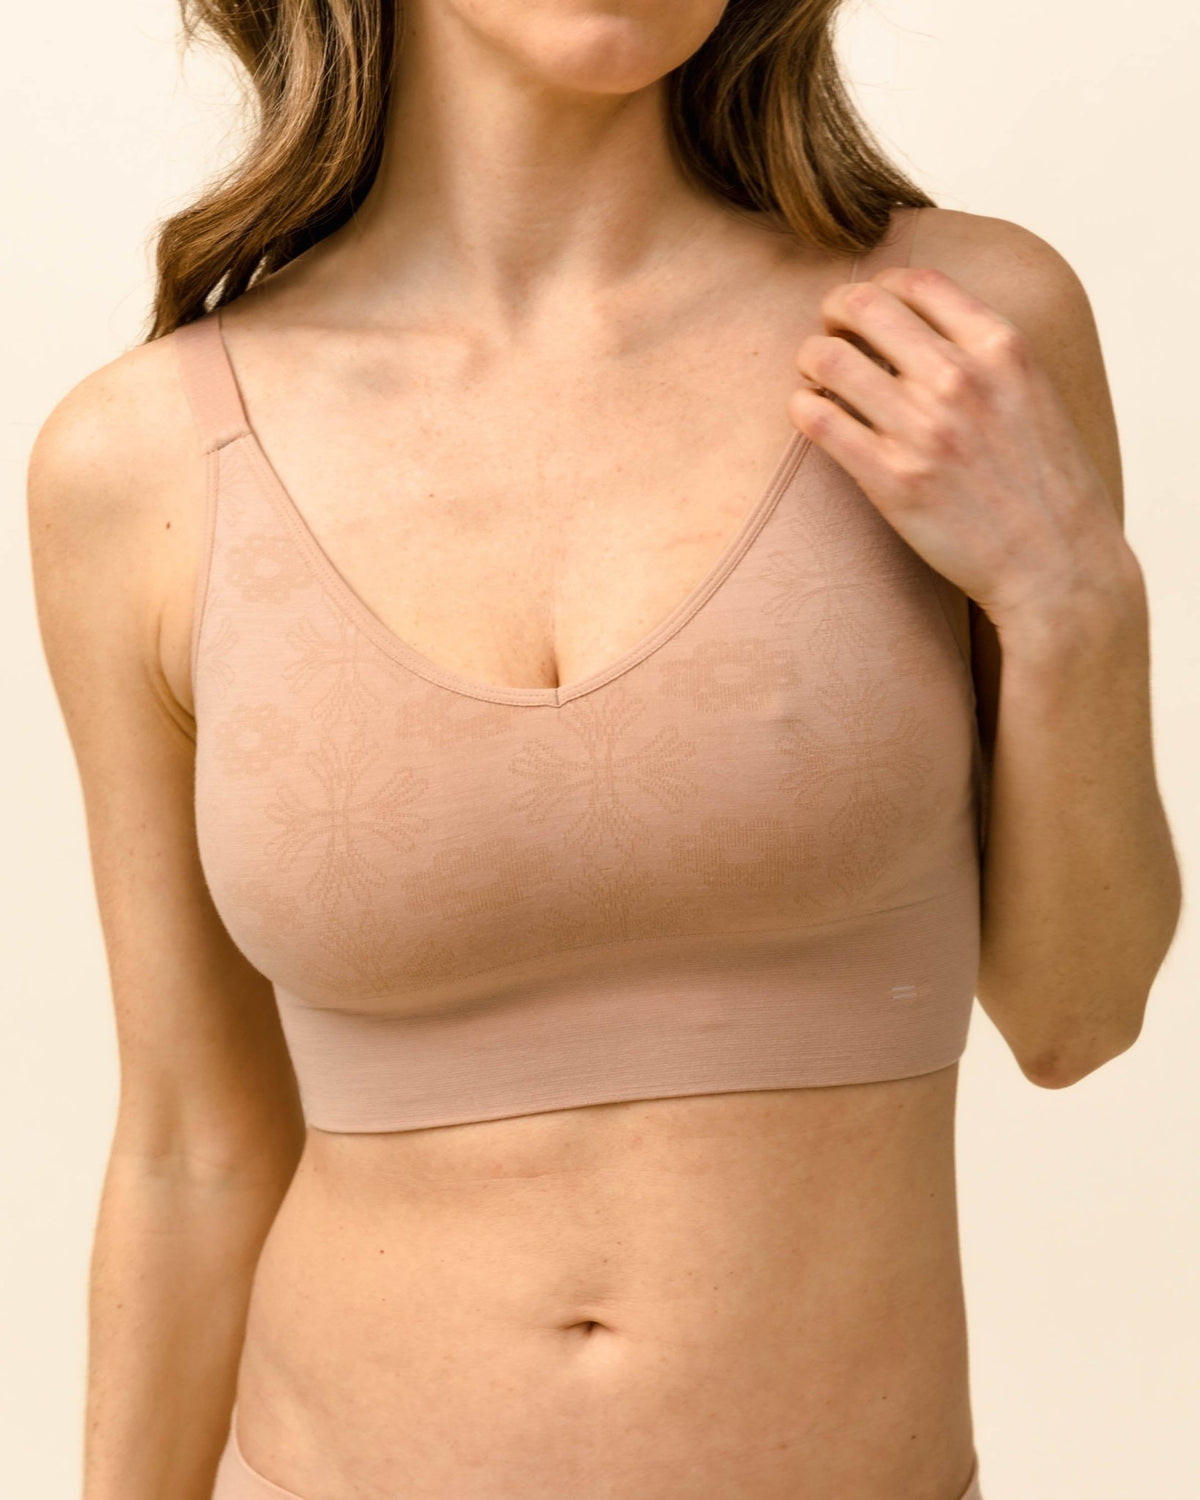 Young girl underwear student bra 100% cotton thin wireless bra